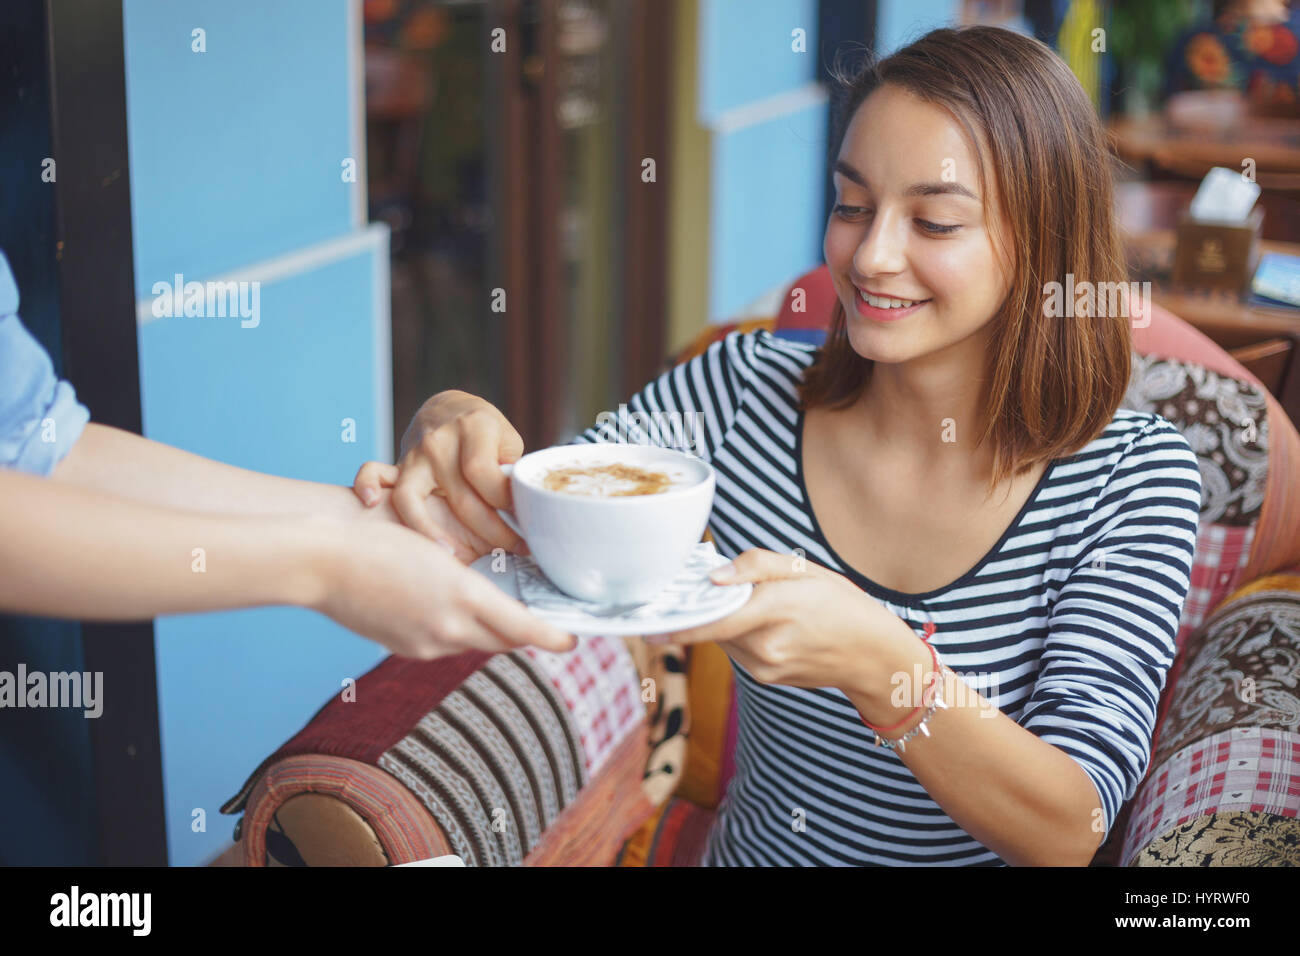 Jeune femme assise en milieu urbain à l'intérieur d'un café. Cafe sur le mode de vie. Portrait de jeune fille adolescente occasionnels Banque D'Images